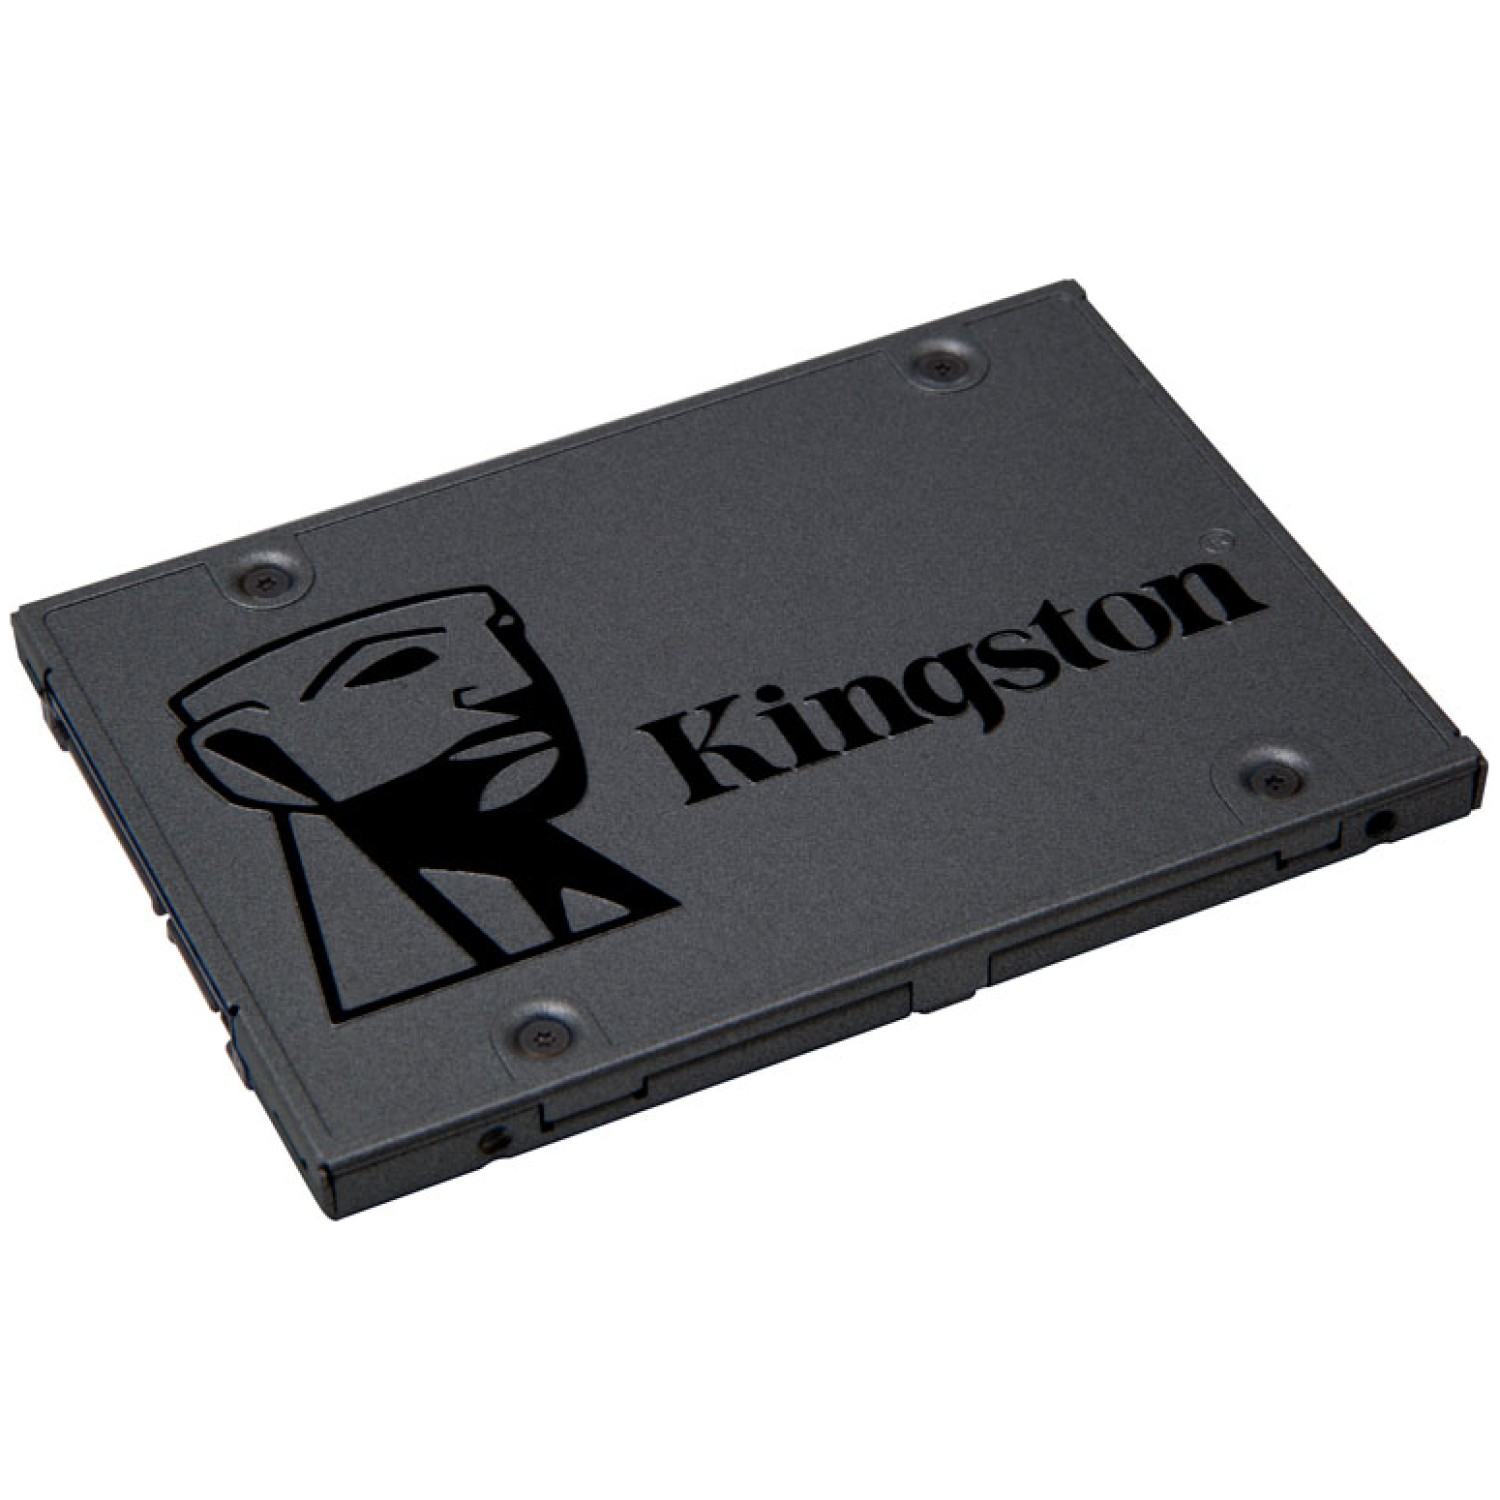 KINGSTON A400 240GB 2